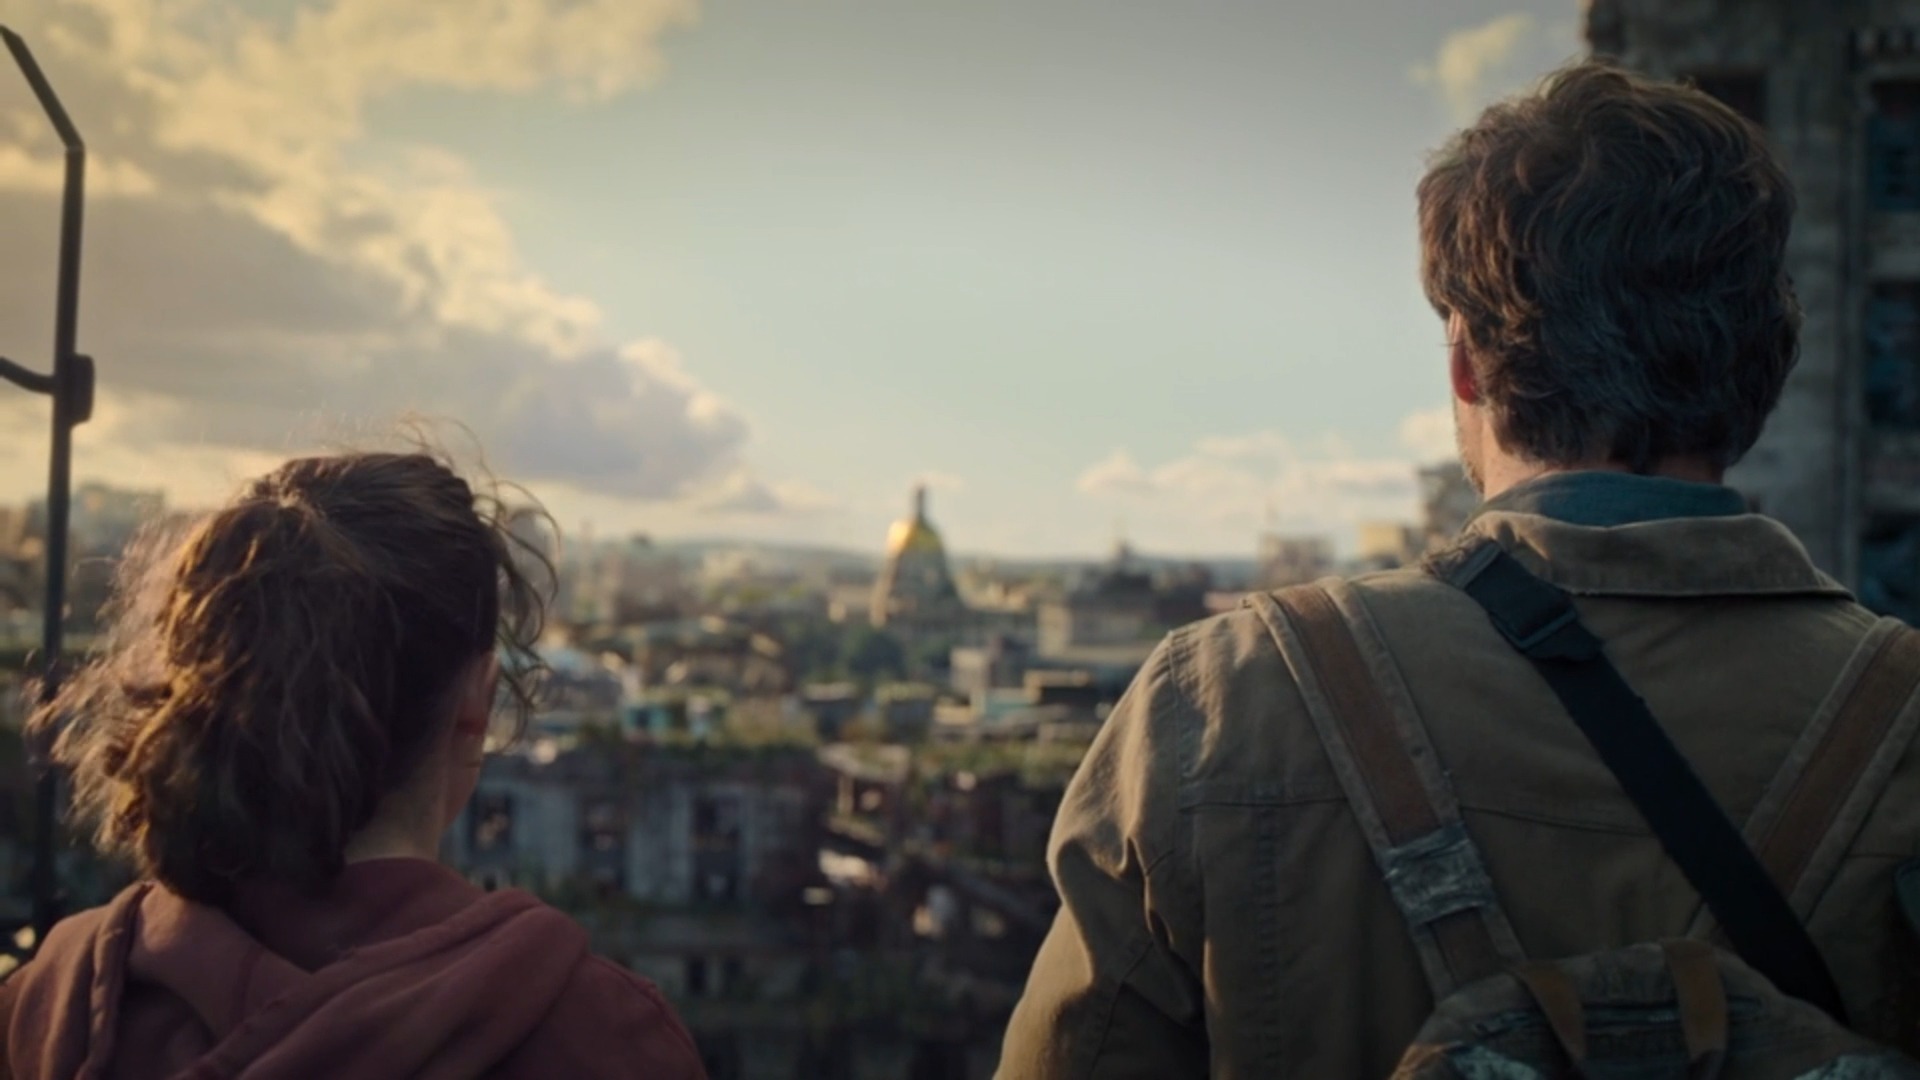 The Last of Us: Veja comparativo de cenas do episódio 3 da série